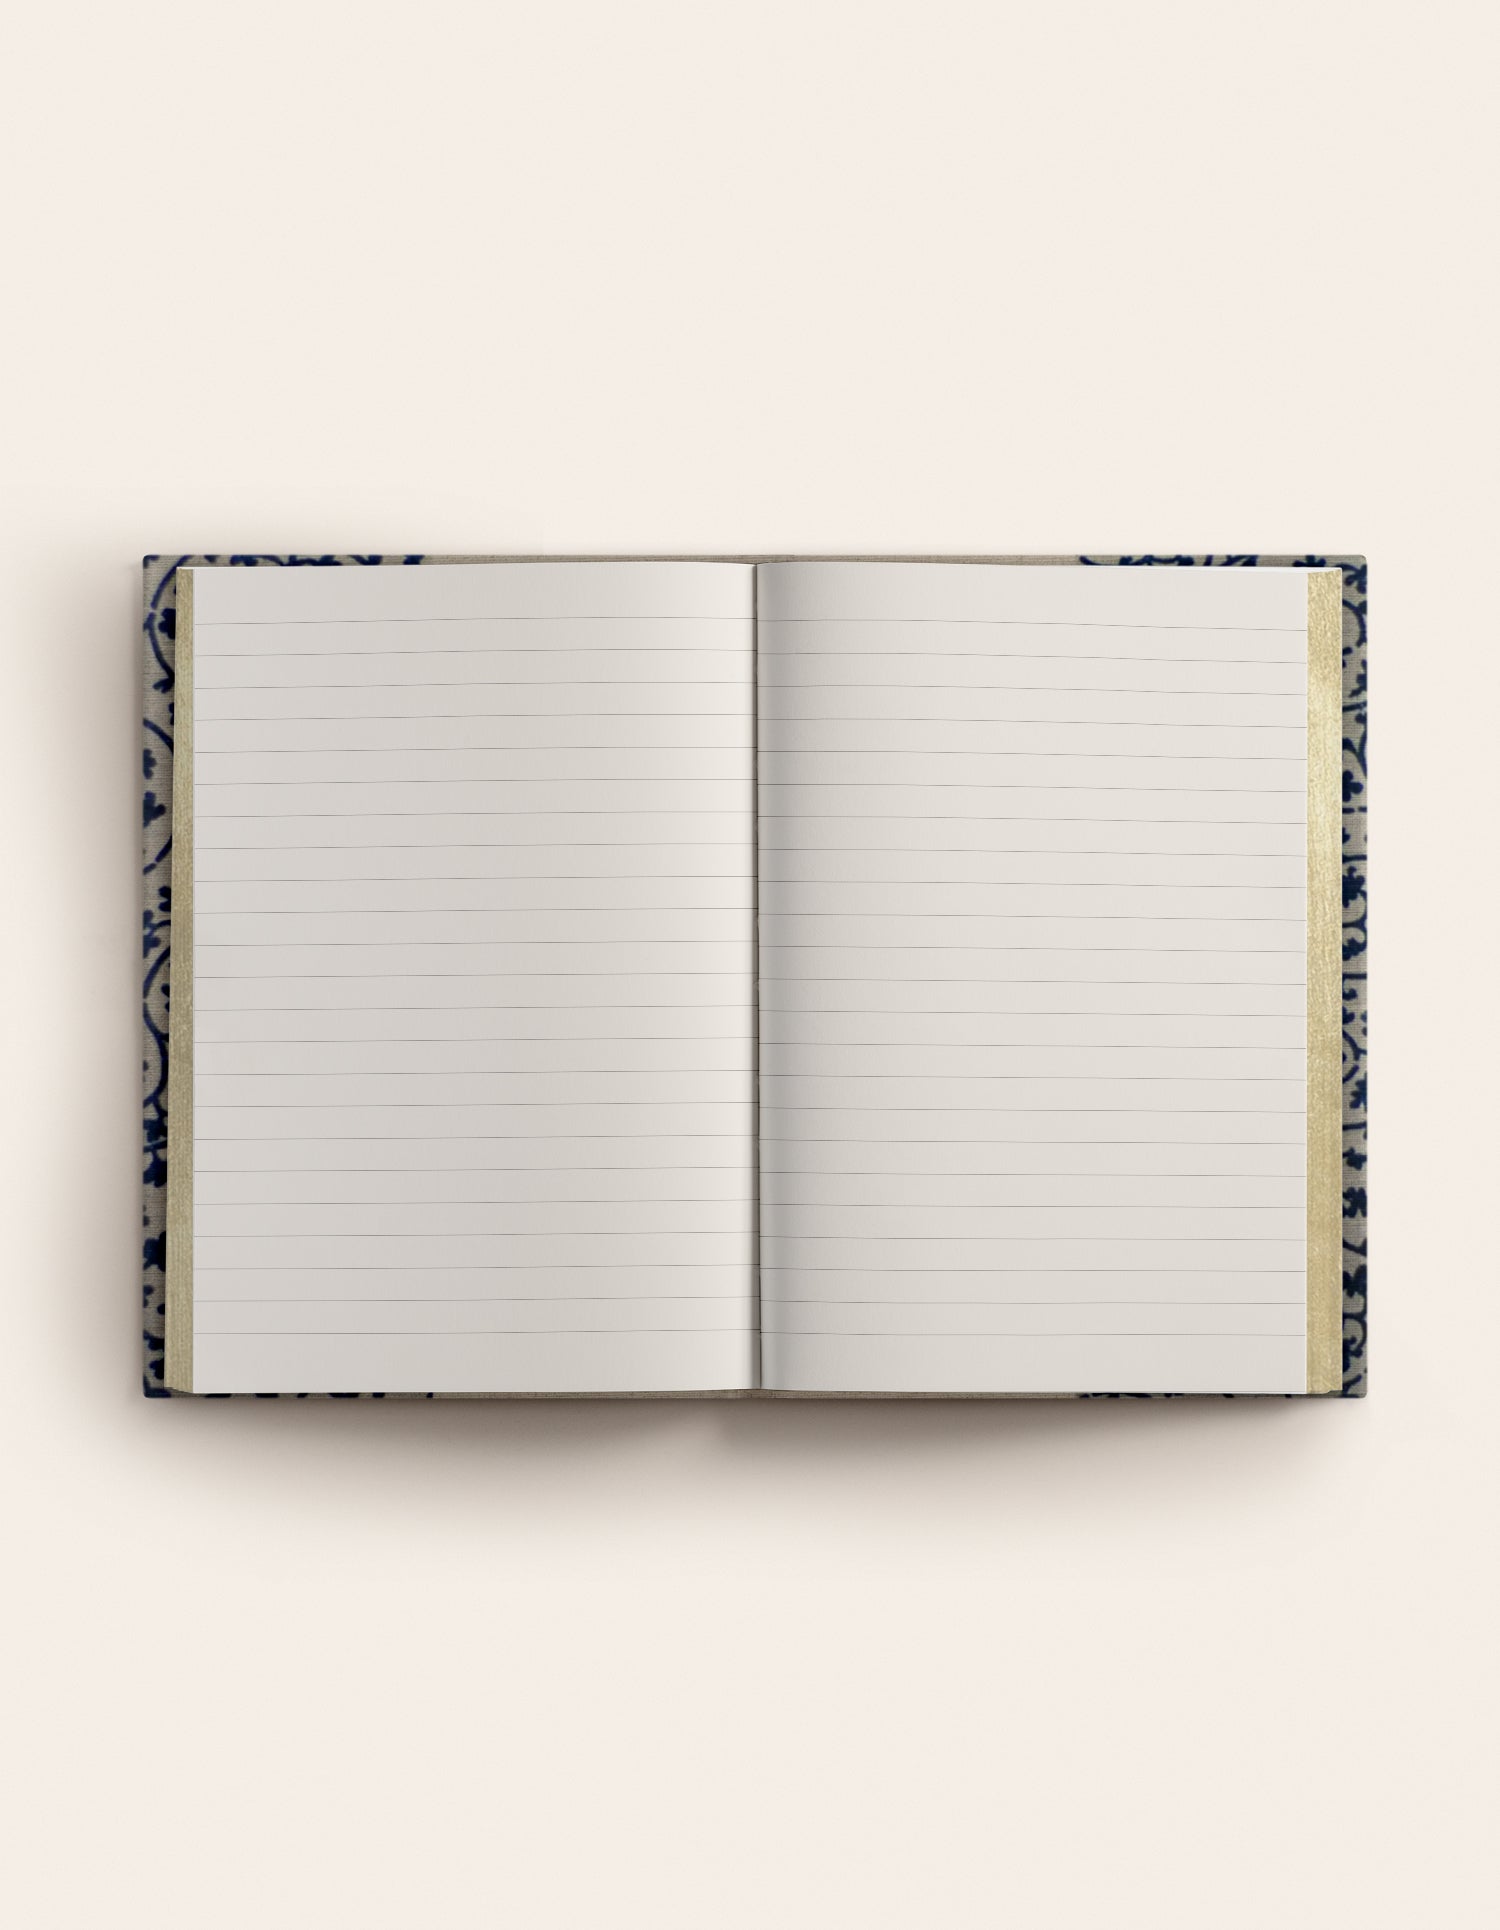 Indigo Royal notebook